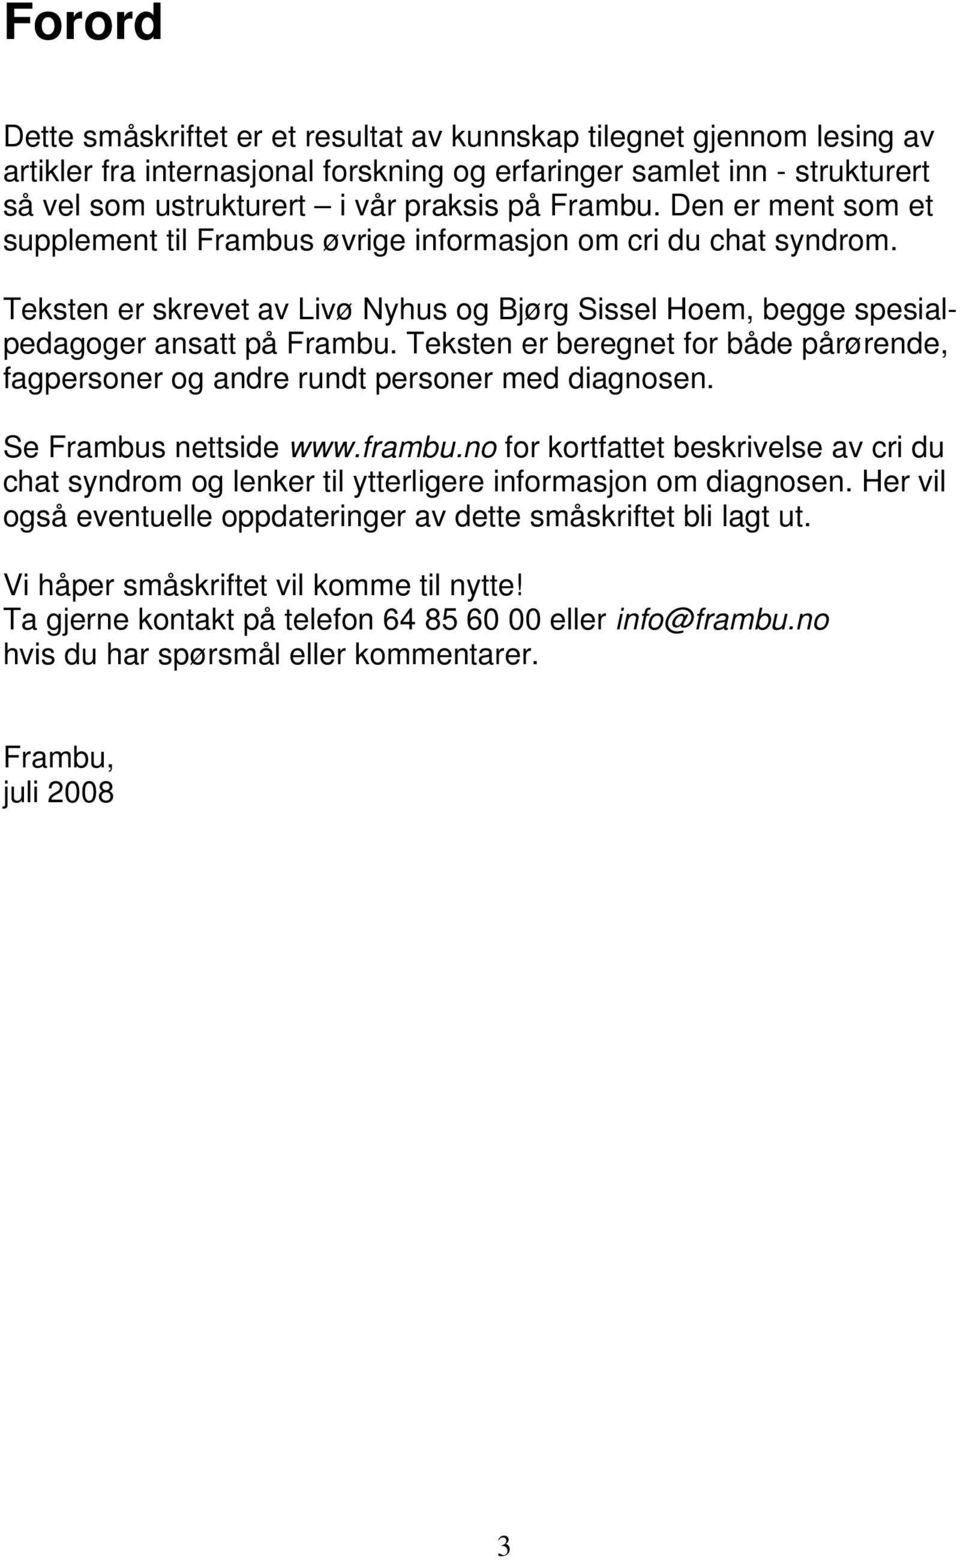 Teksten er beregnet for både pårørende, fagpersoner og andre rundt personer med diagnosen. Se Frambus nettside www.frambu.